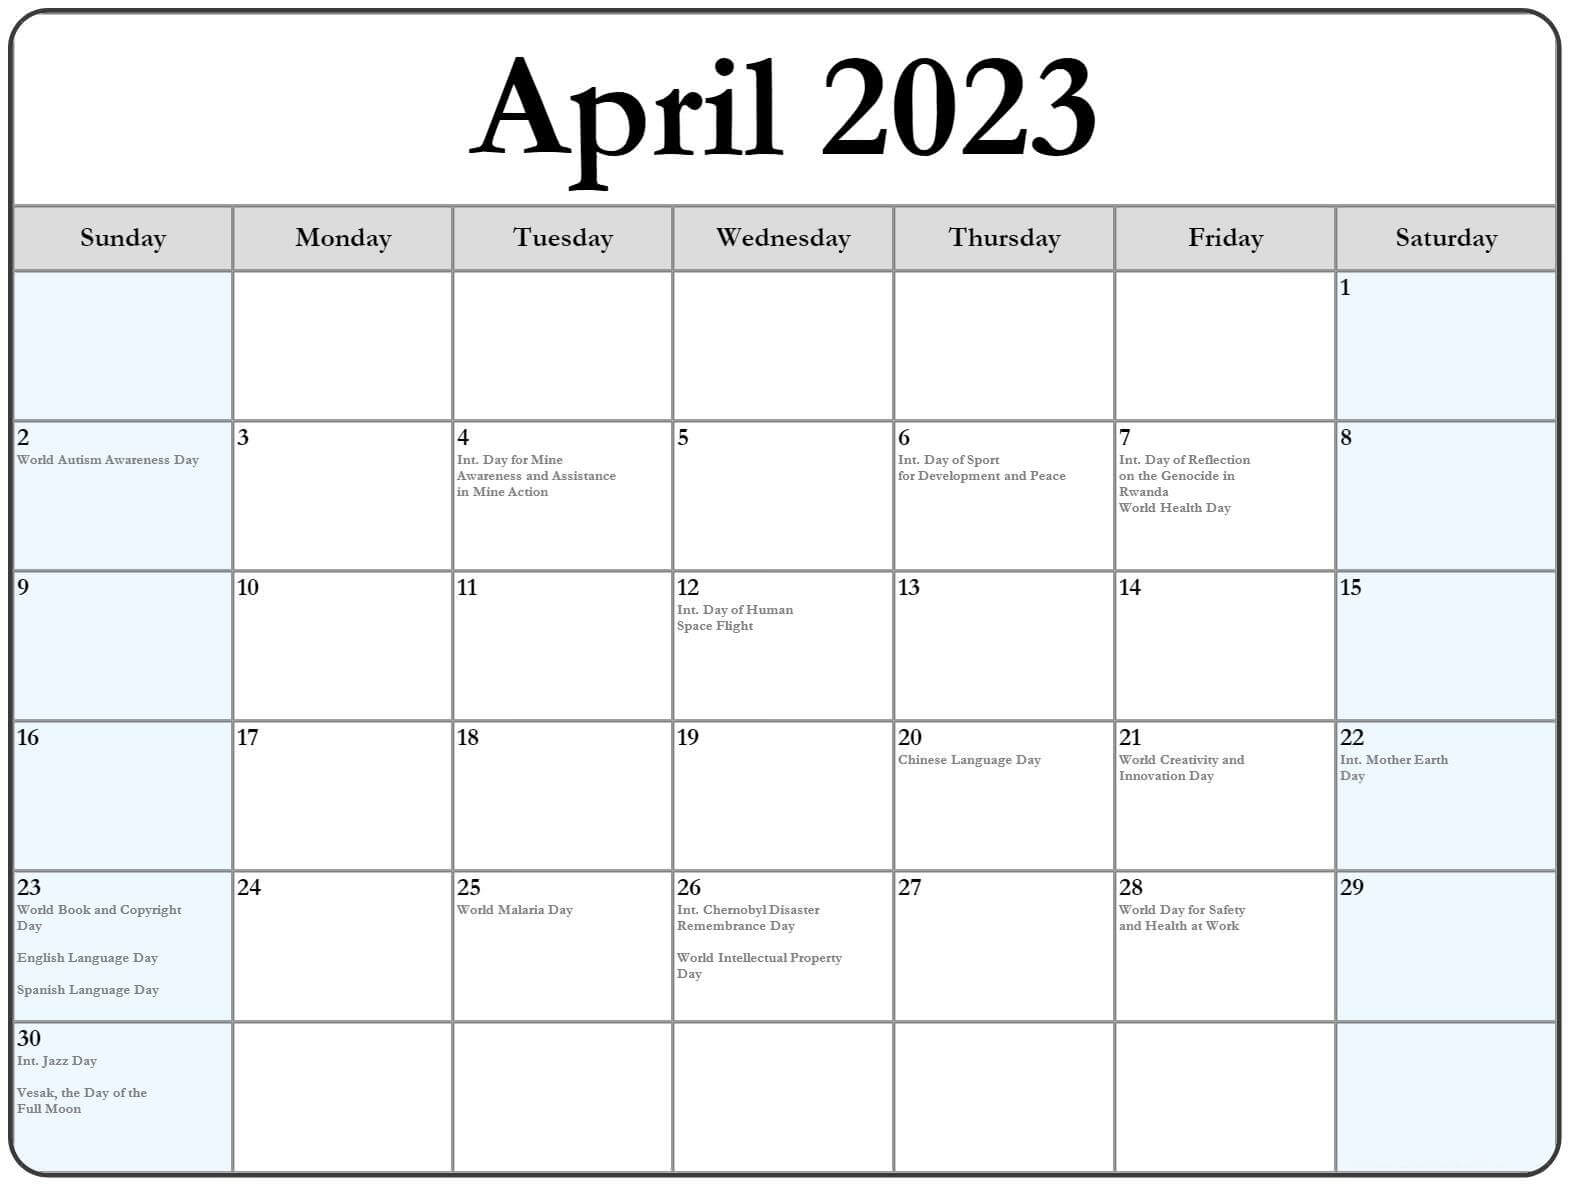 April 2023 Calendar Holidays with Dates